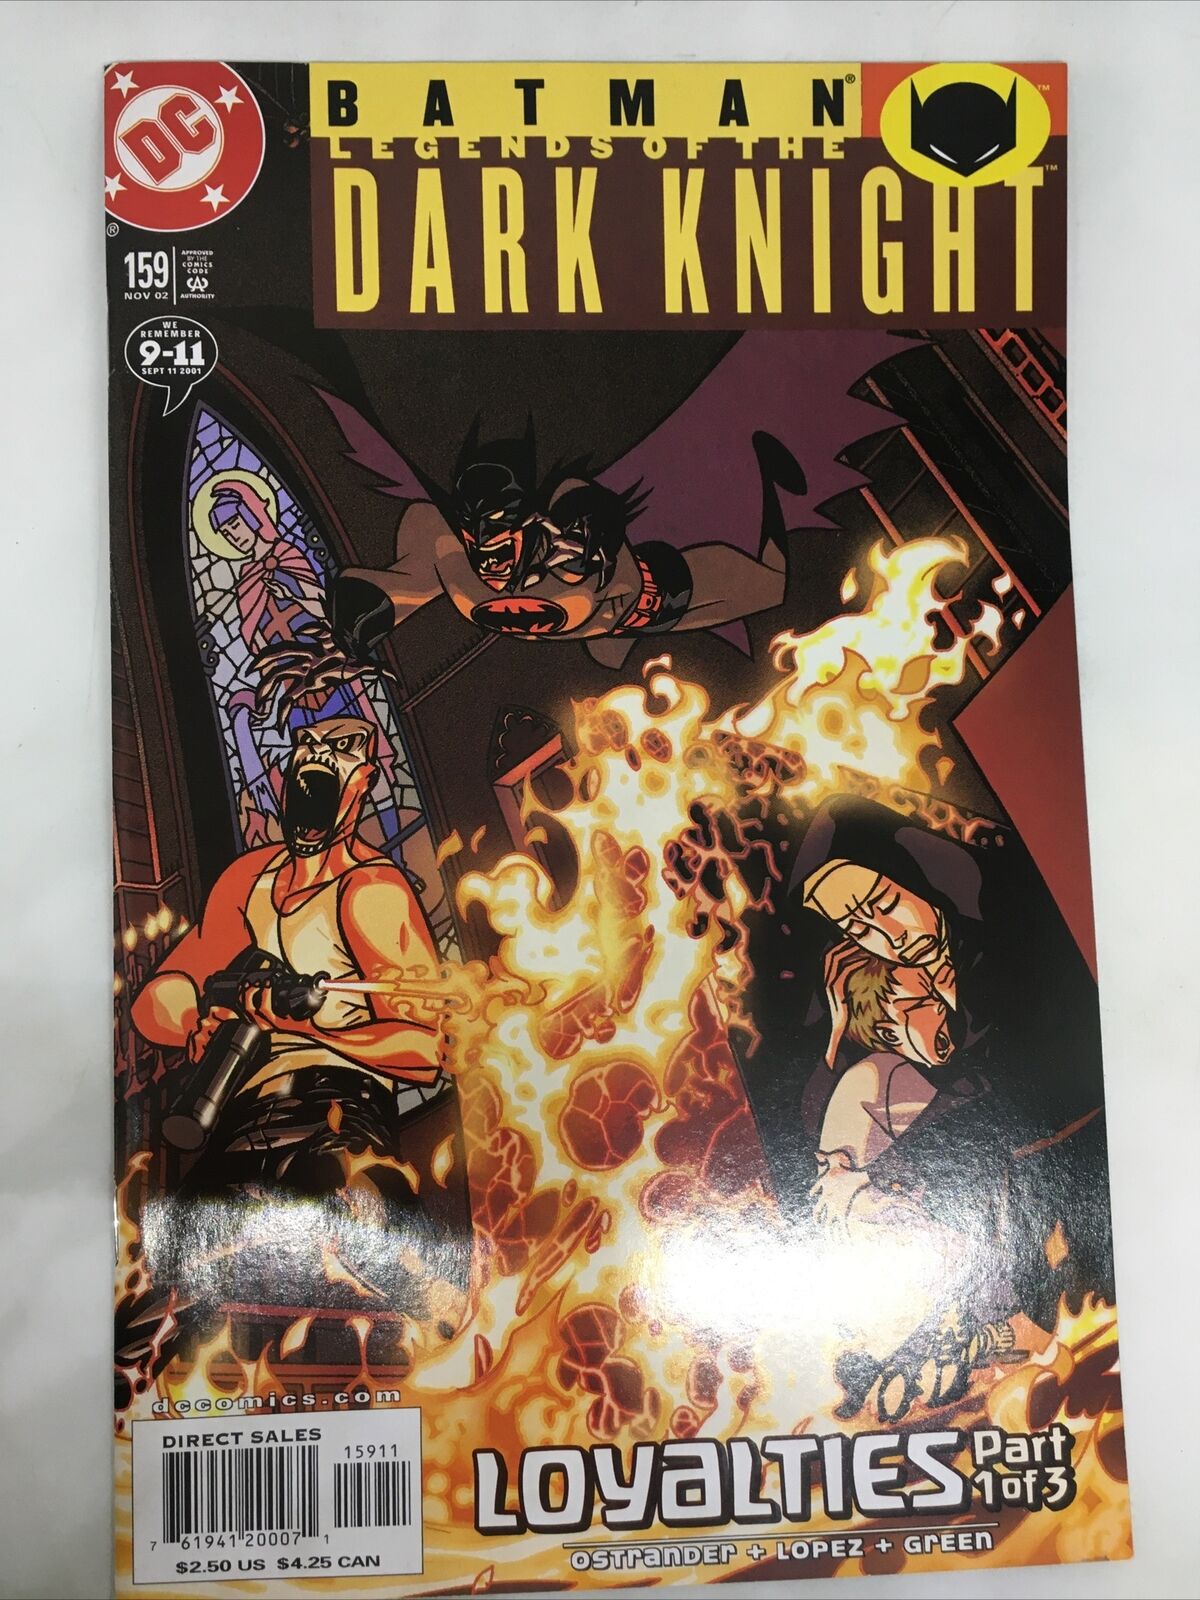 BATMAN LEGENDS OF THE DARK KNIGHT #159 FIRST PRINT DC COMICS (2002) LOYALTIES